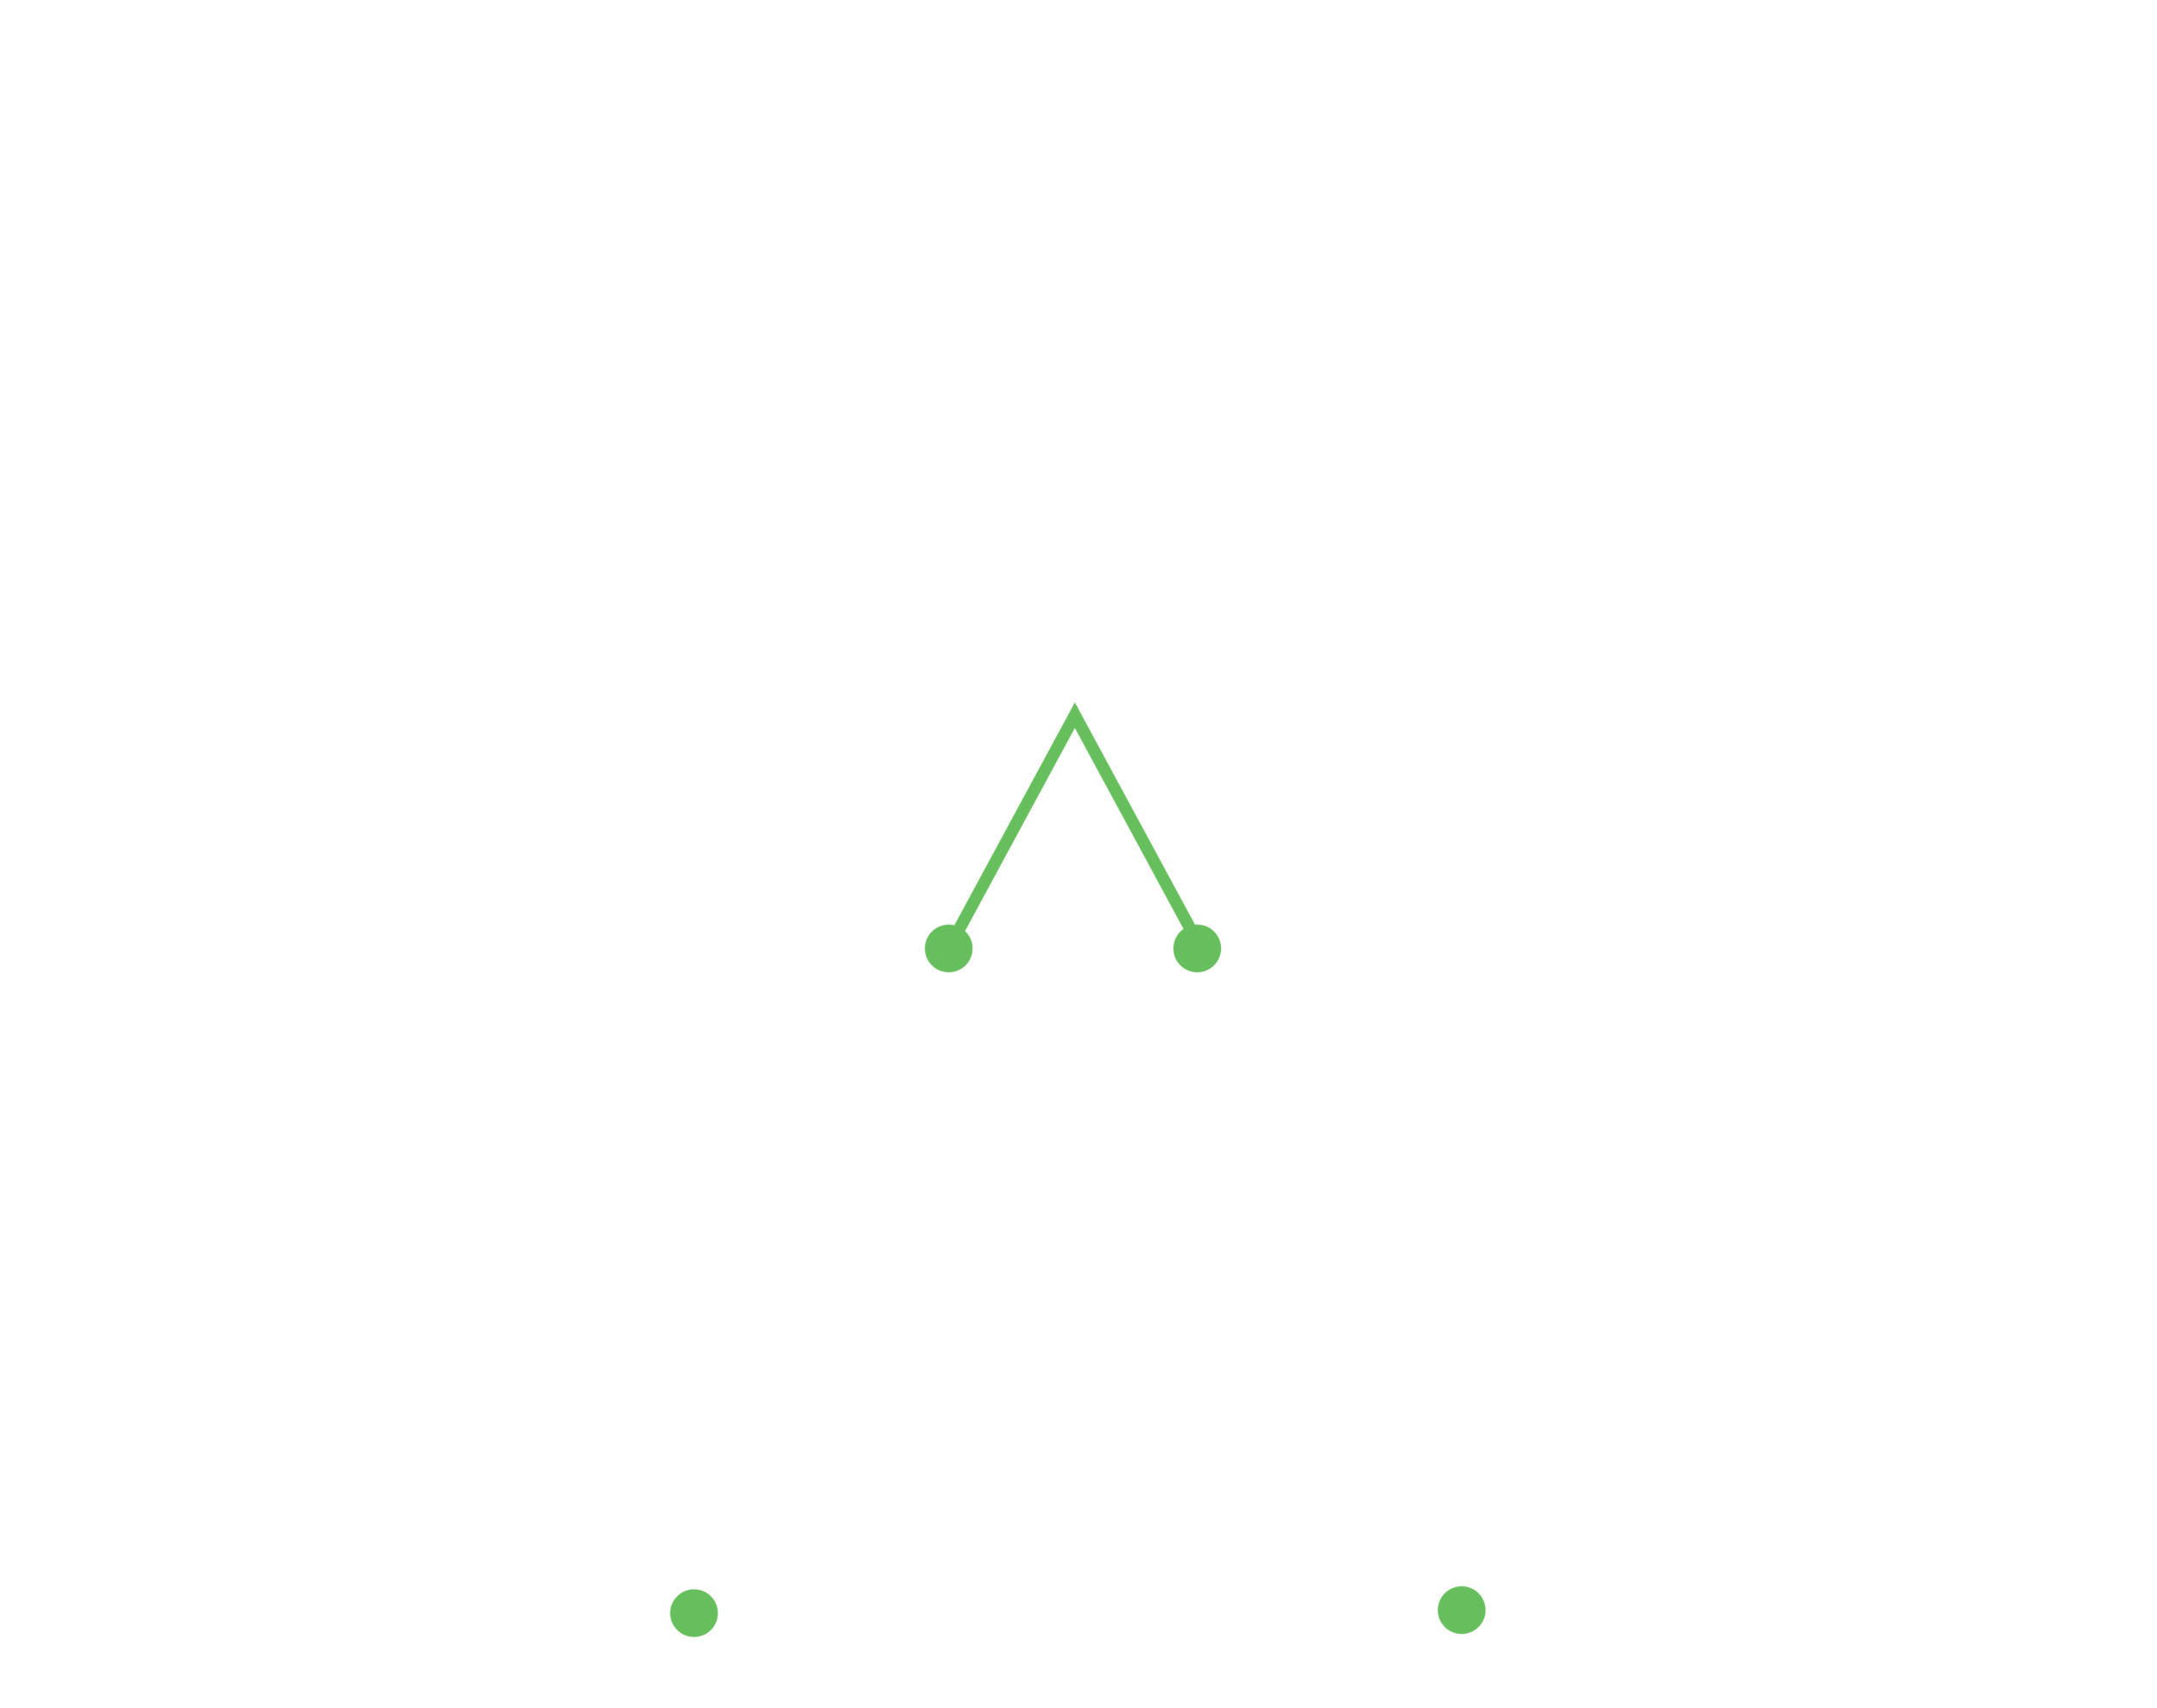 Wairarapa Chiropractic